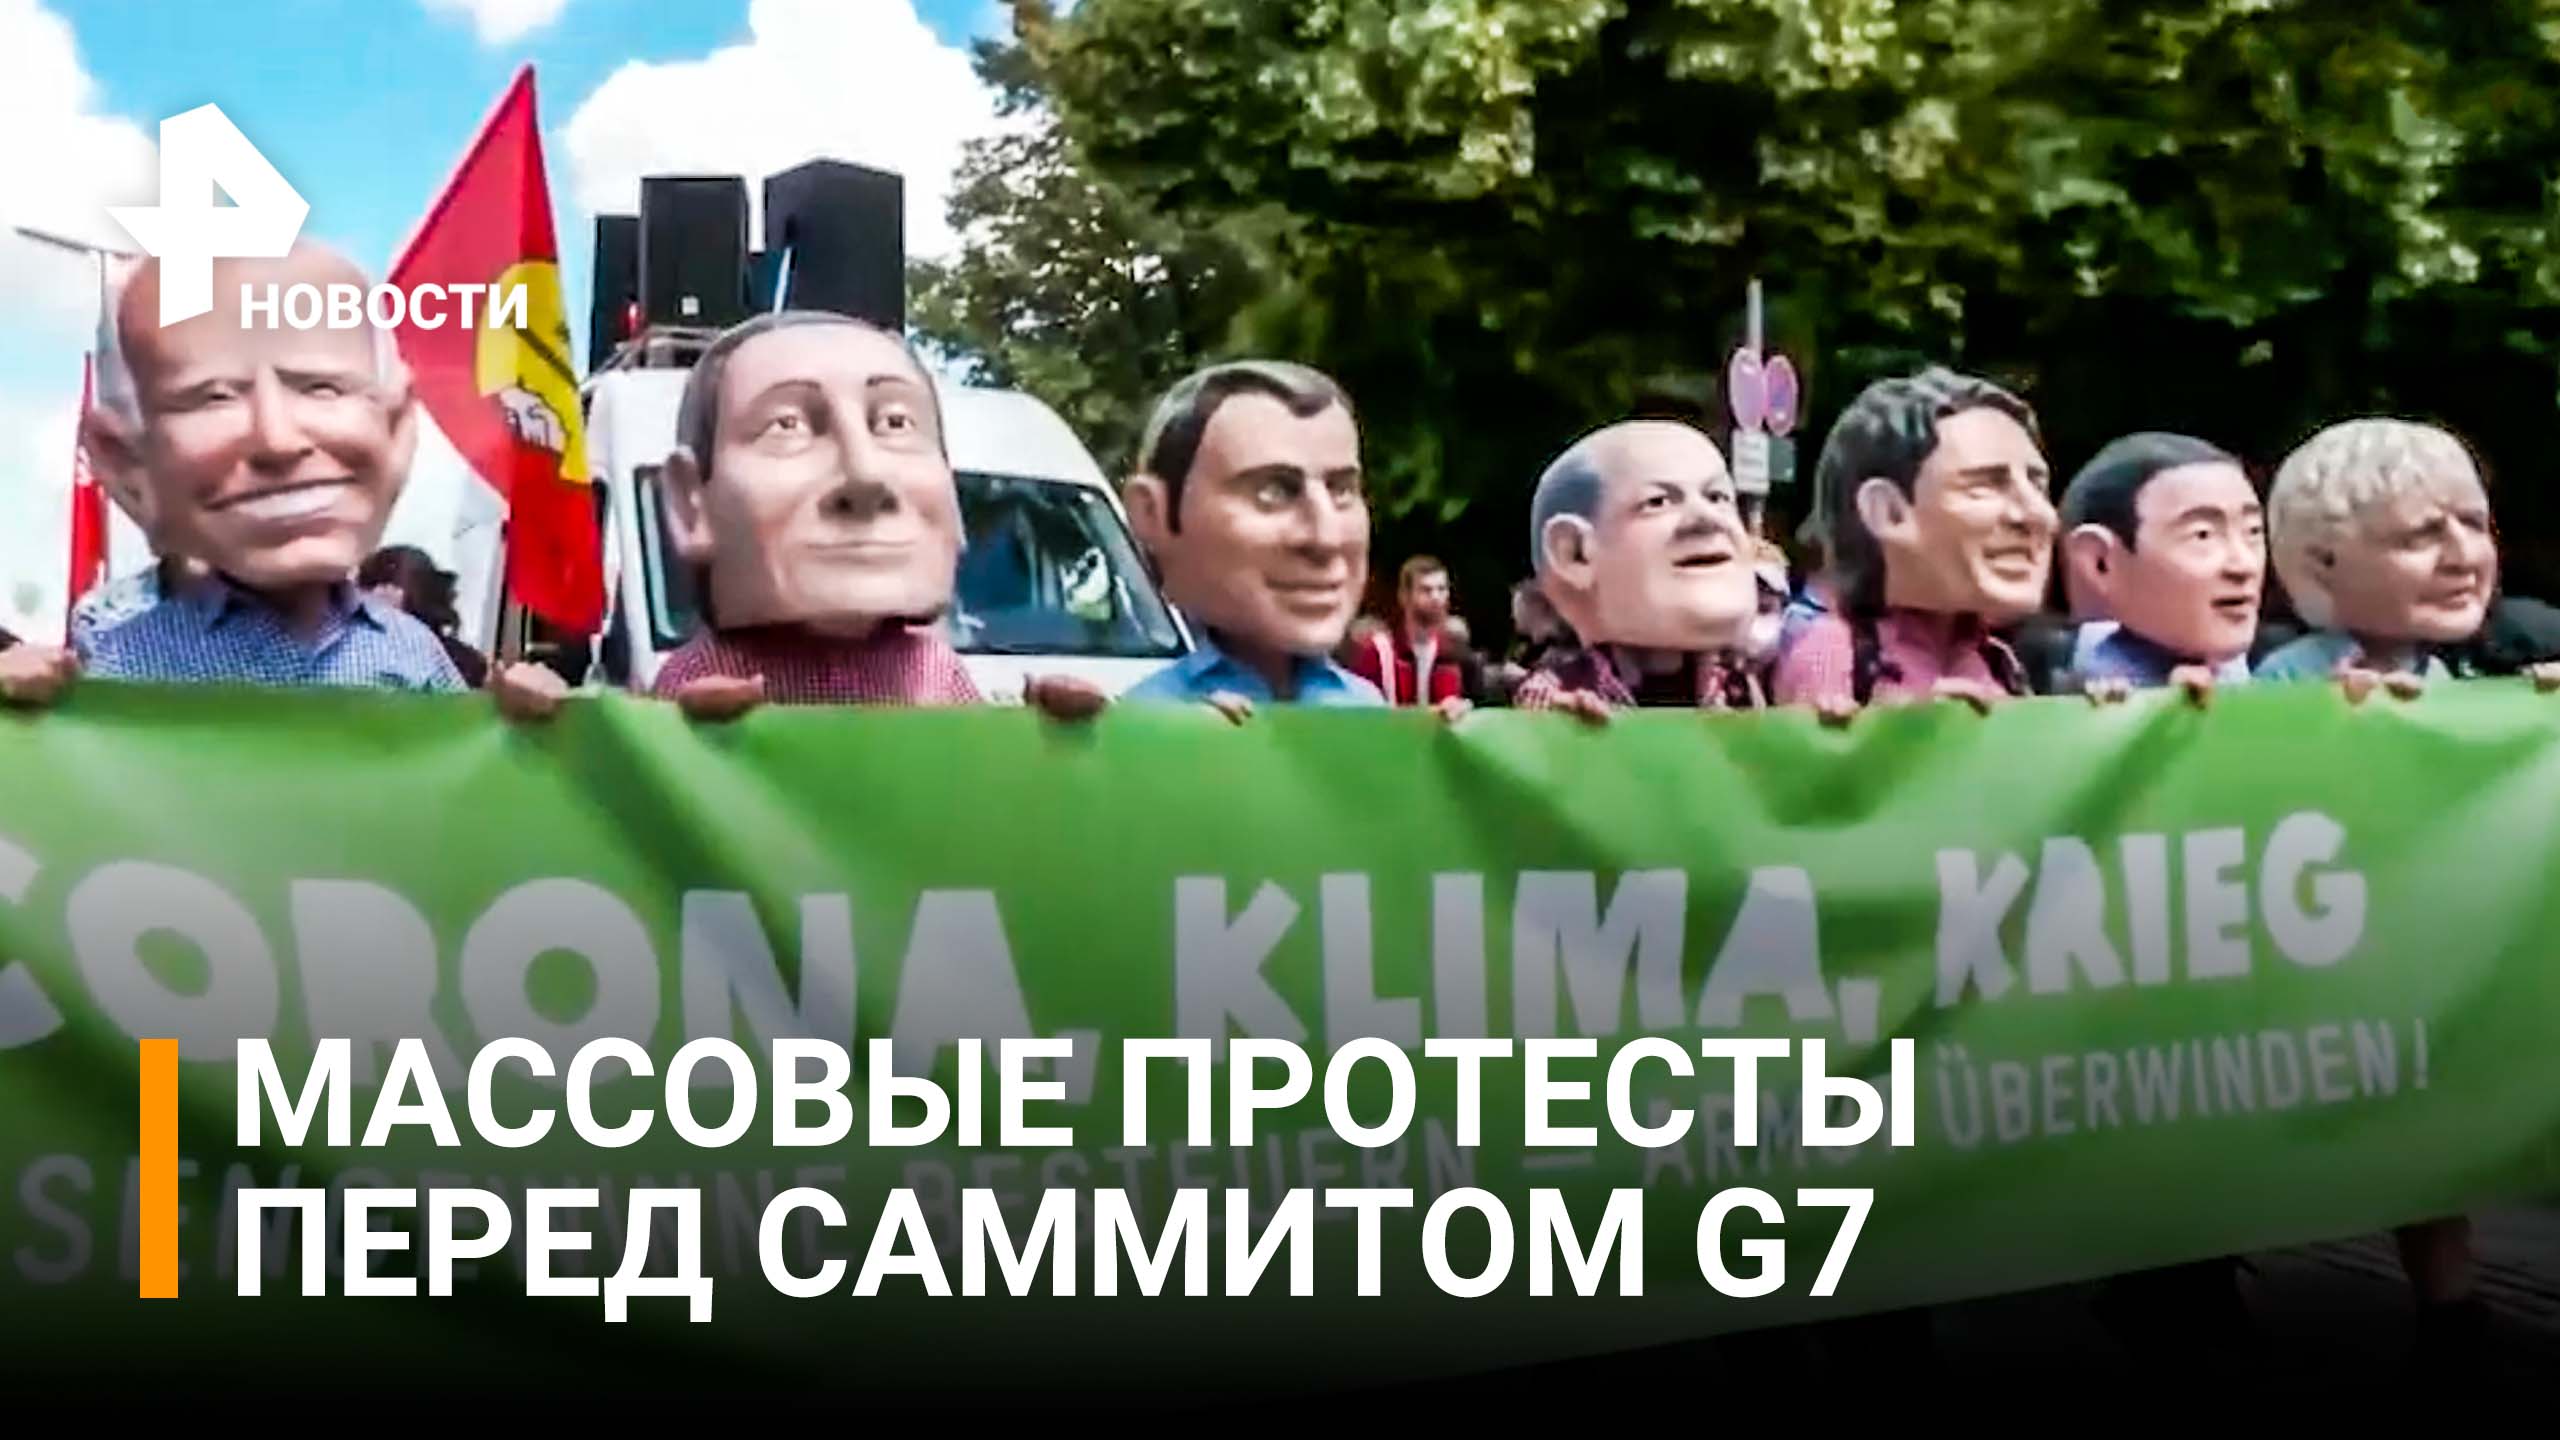 Демонстранты в Мюнхене требуют отменить саммит G7. Стычки с полицией / РЕН Новости